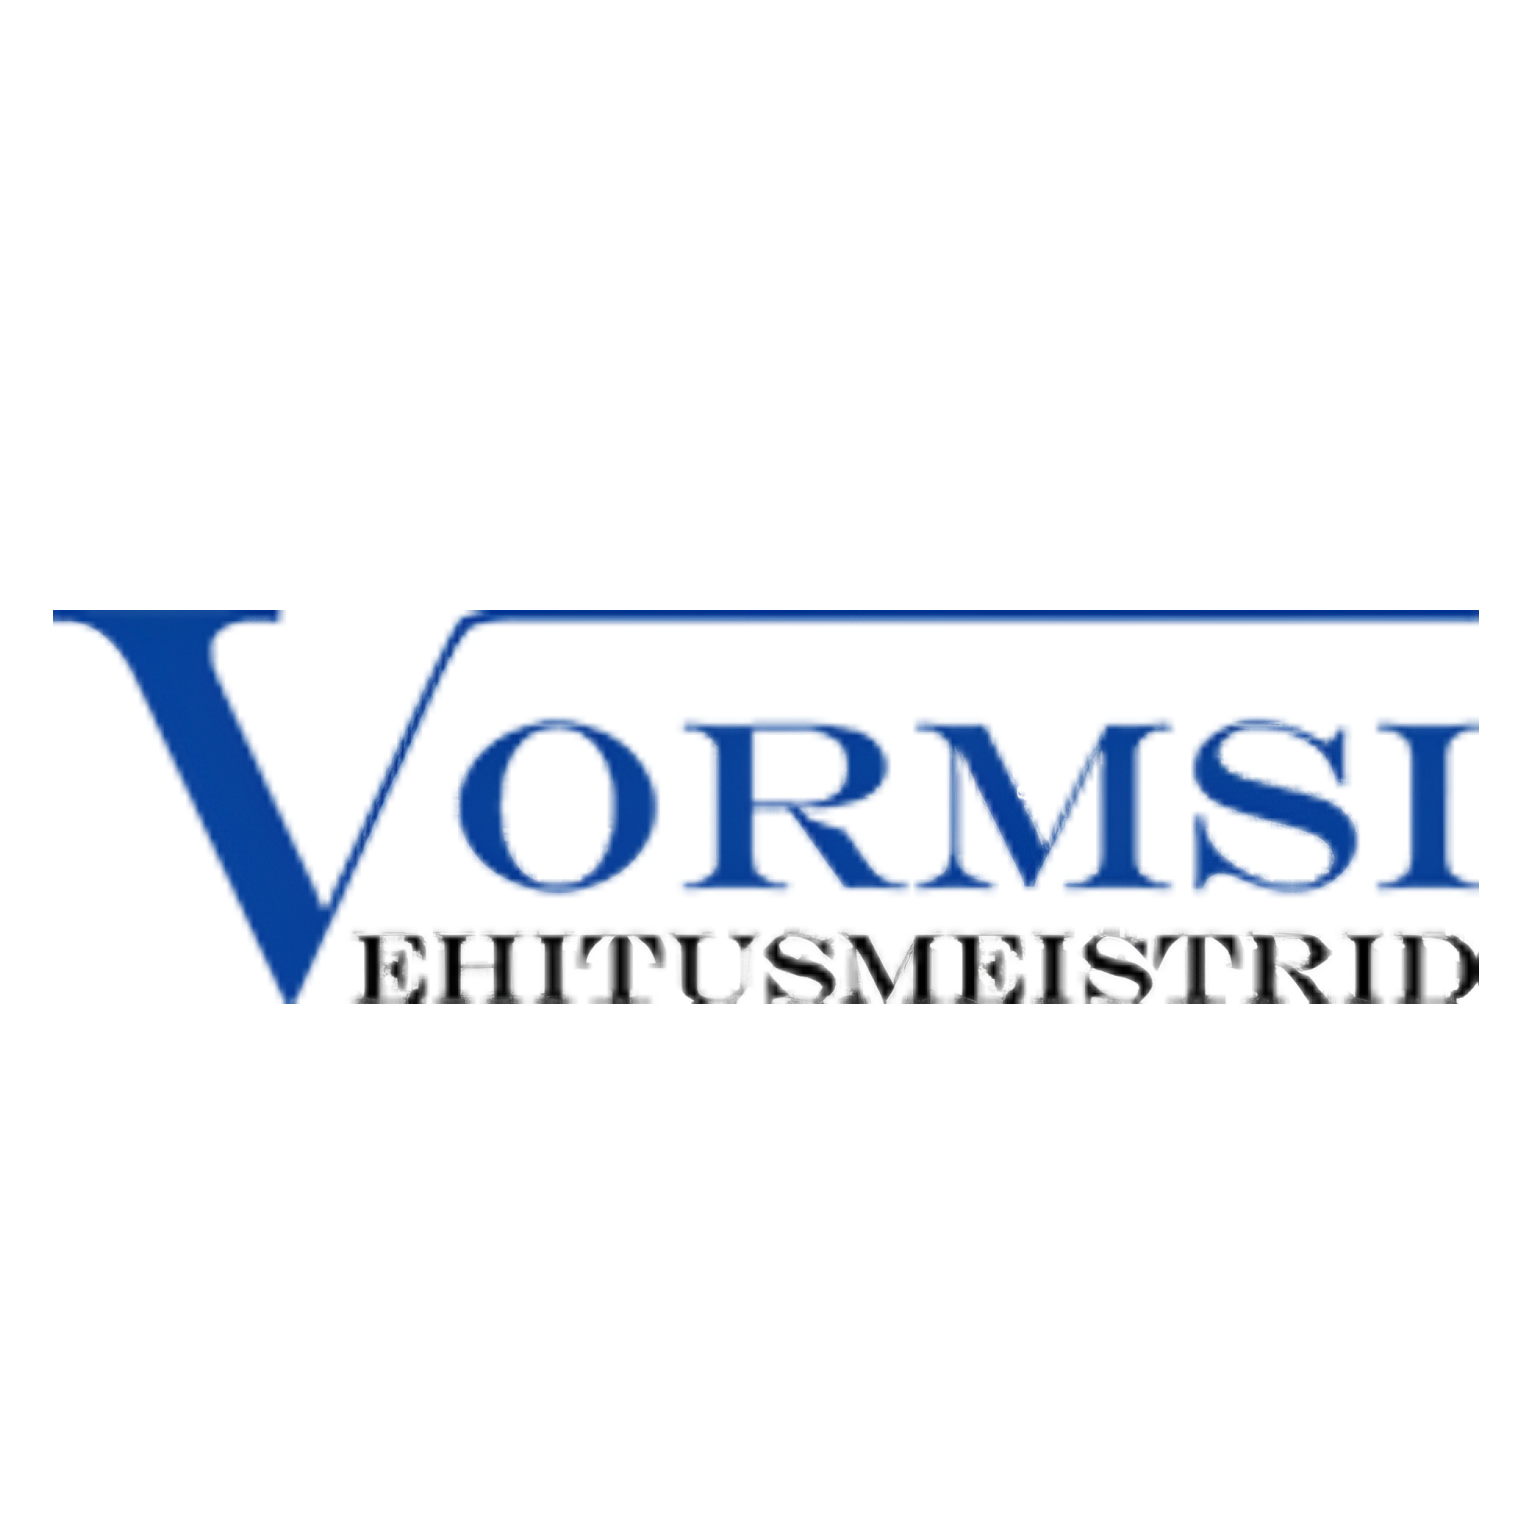 VORMSI EHITUSMEISTRID OÜ логотип